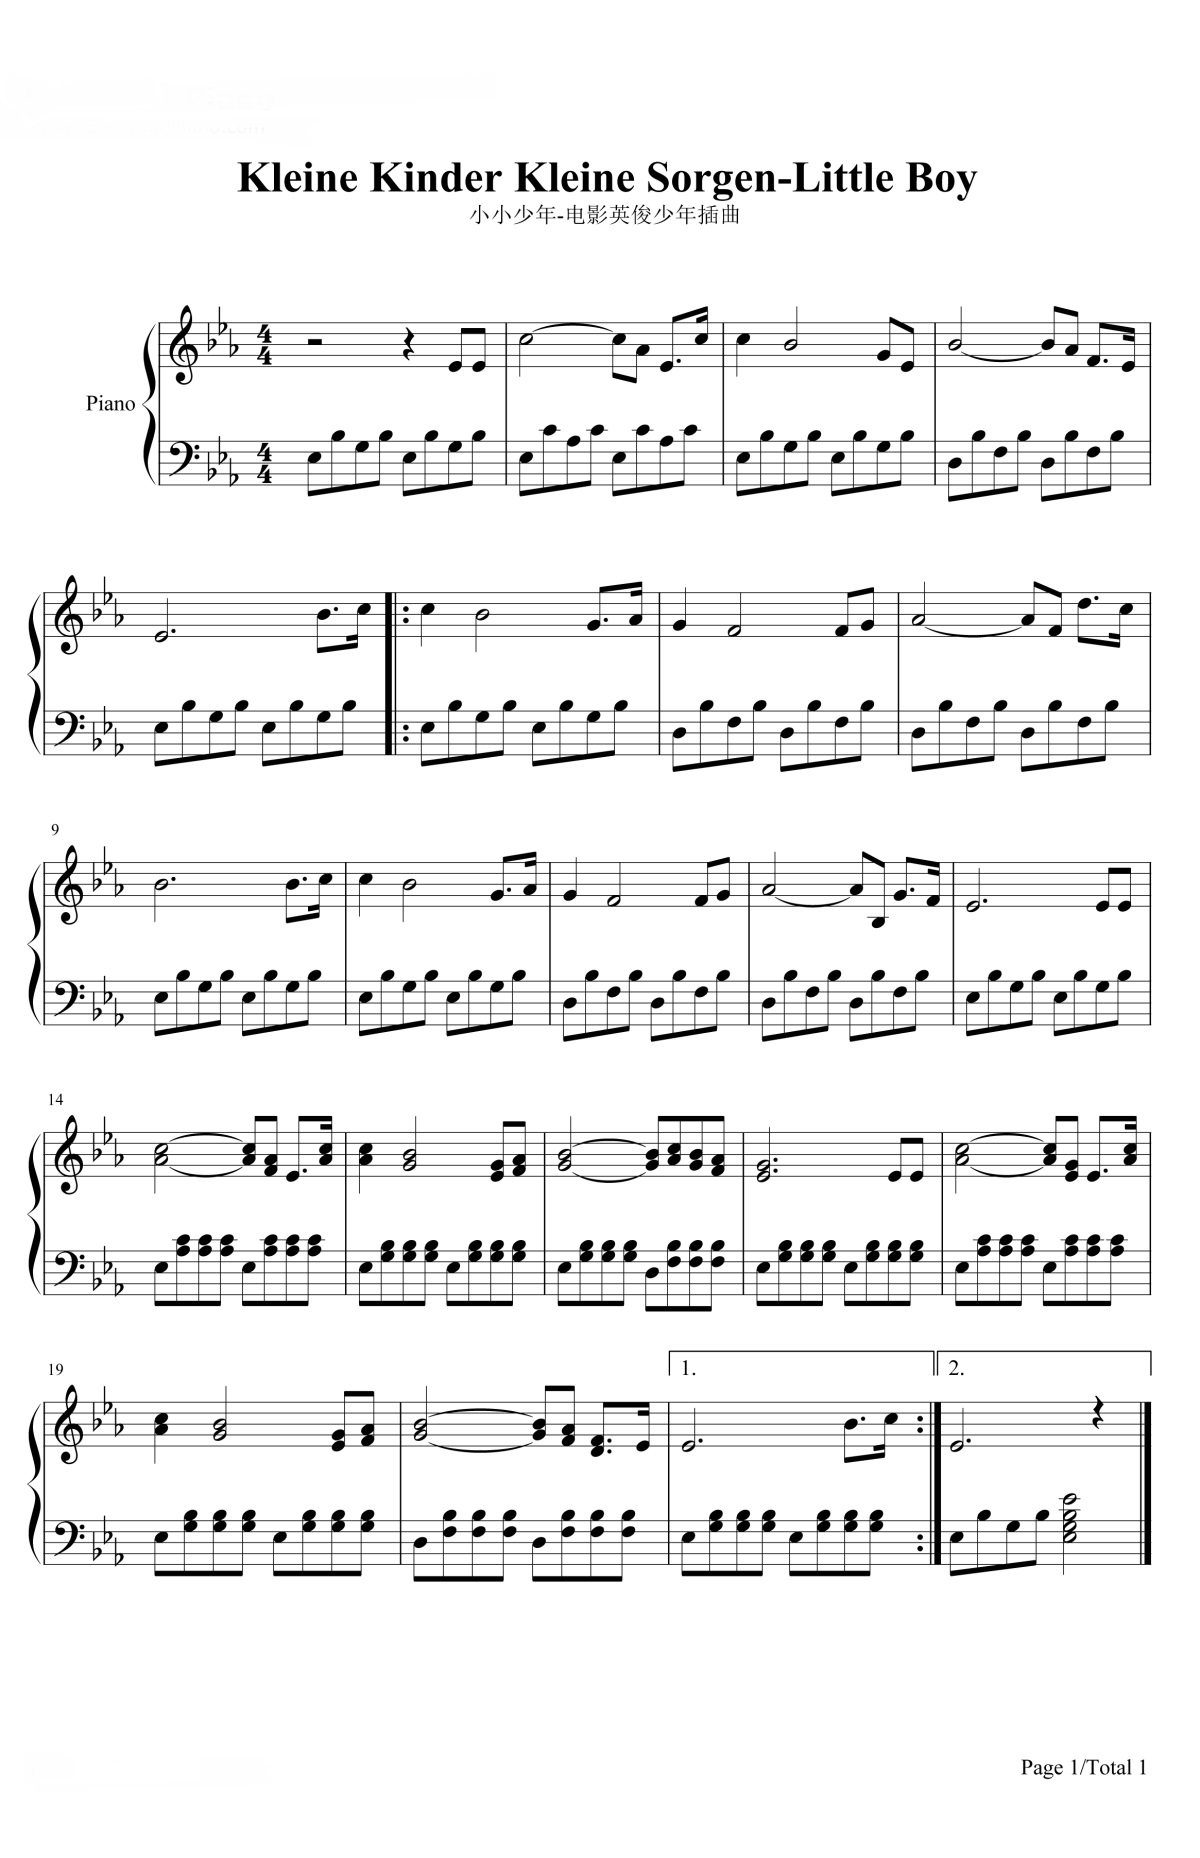 【小小少年】的钢琴谱简谱 – 海因切